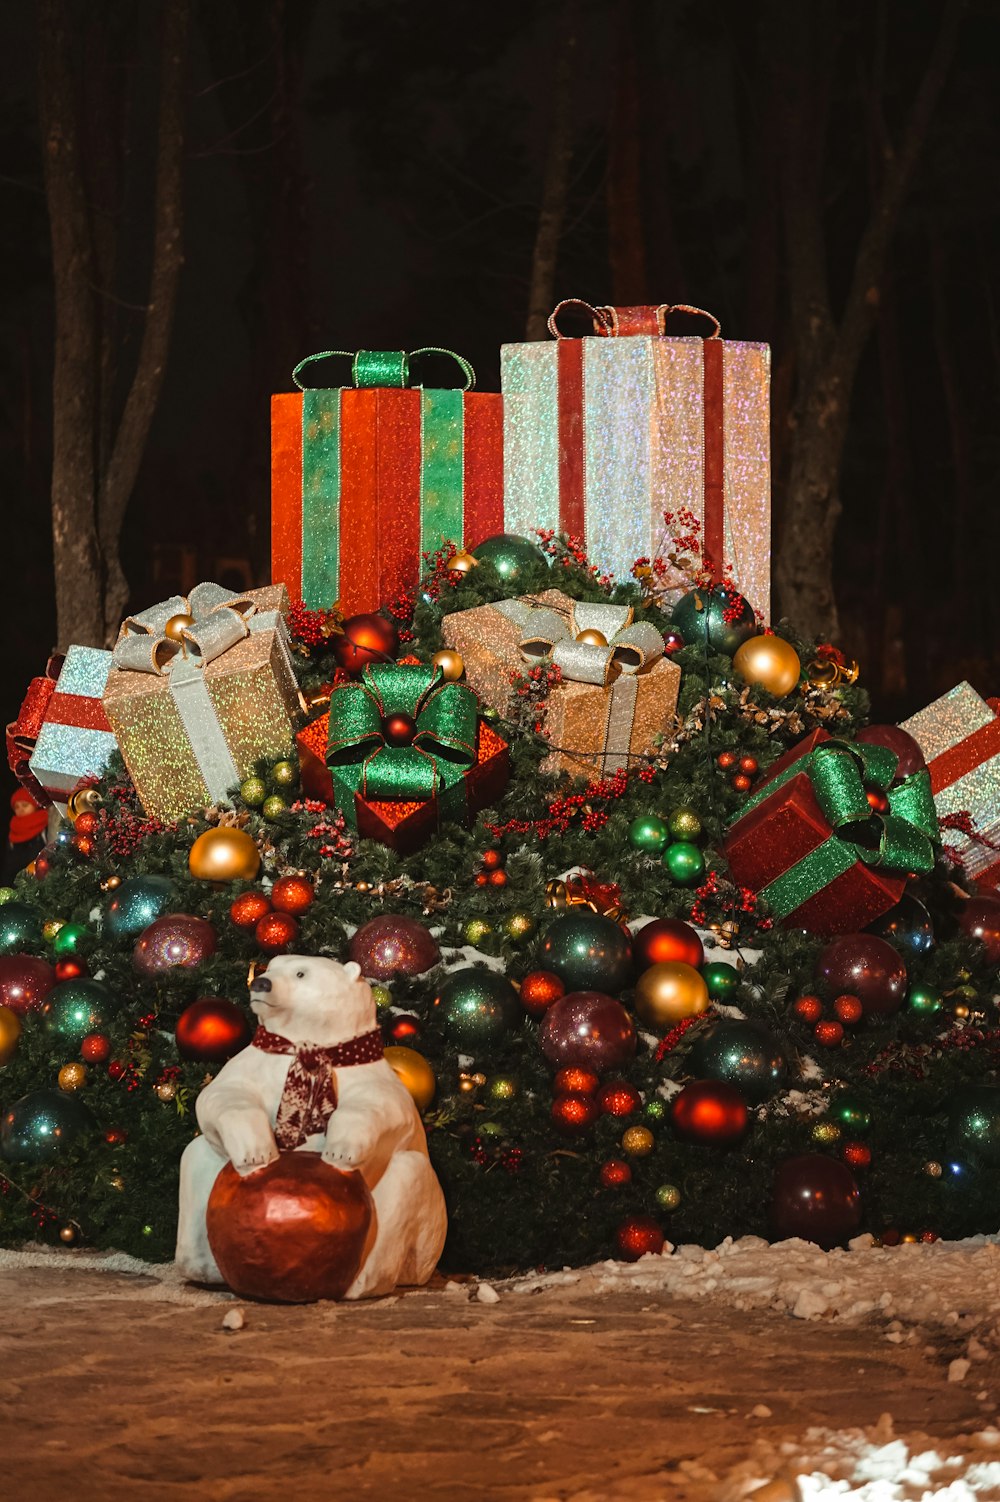 싸구려와 싸구려가 있는 녹색 크리스마스 트리 옆에 빨간색과 흰색 선물 상자